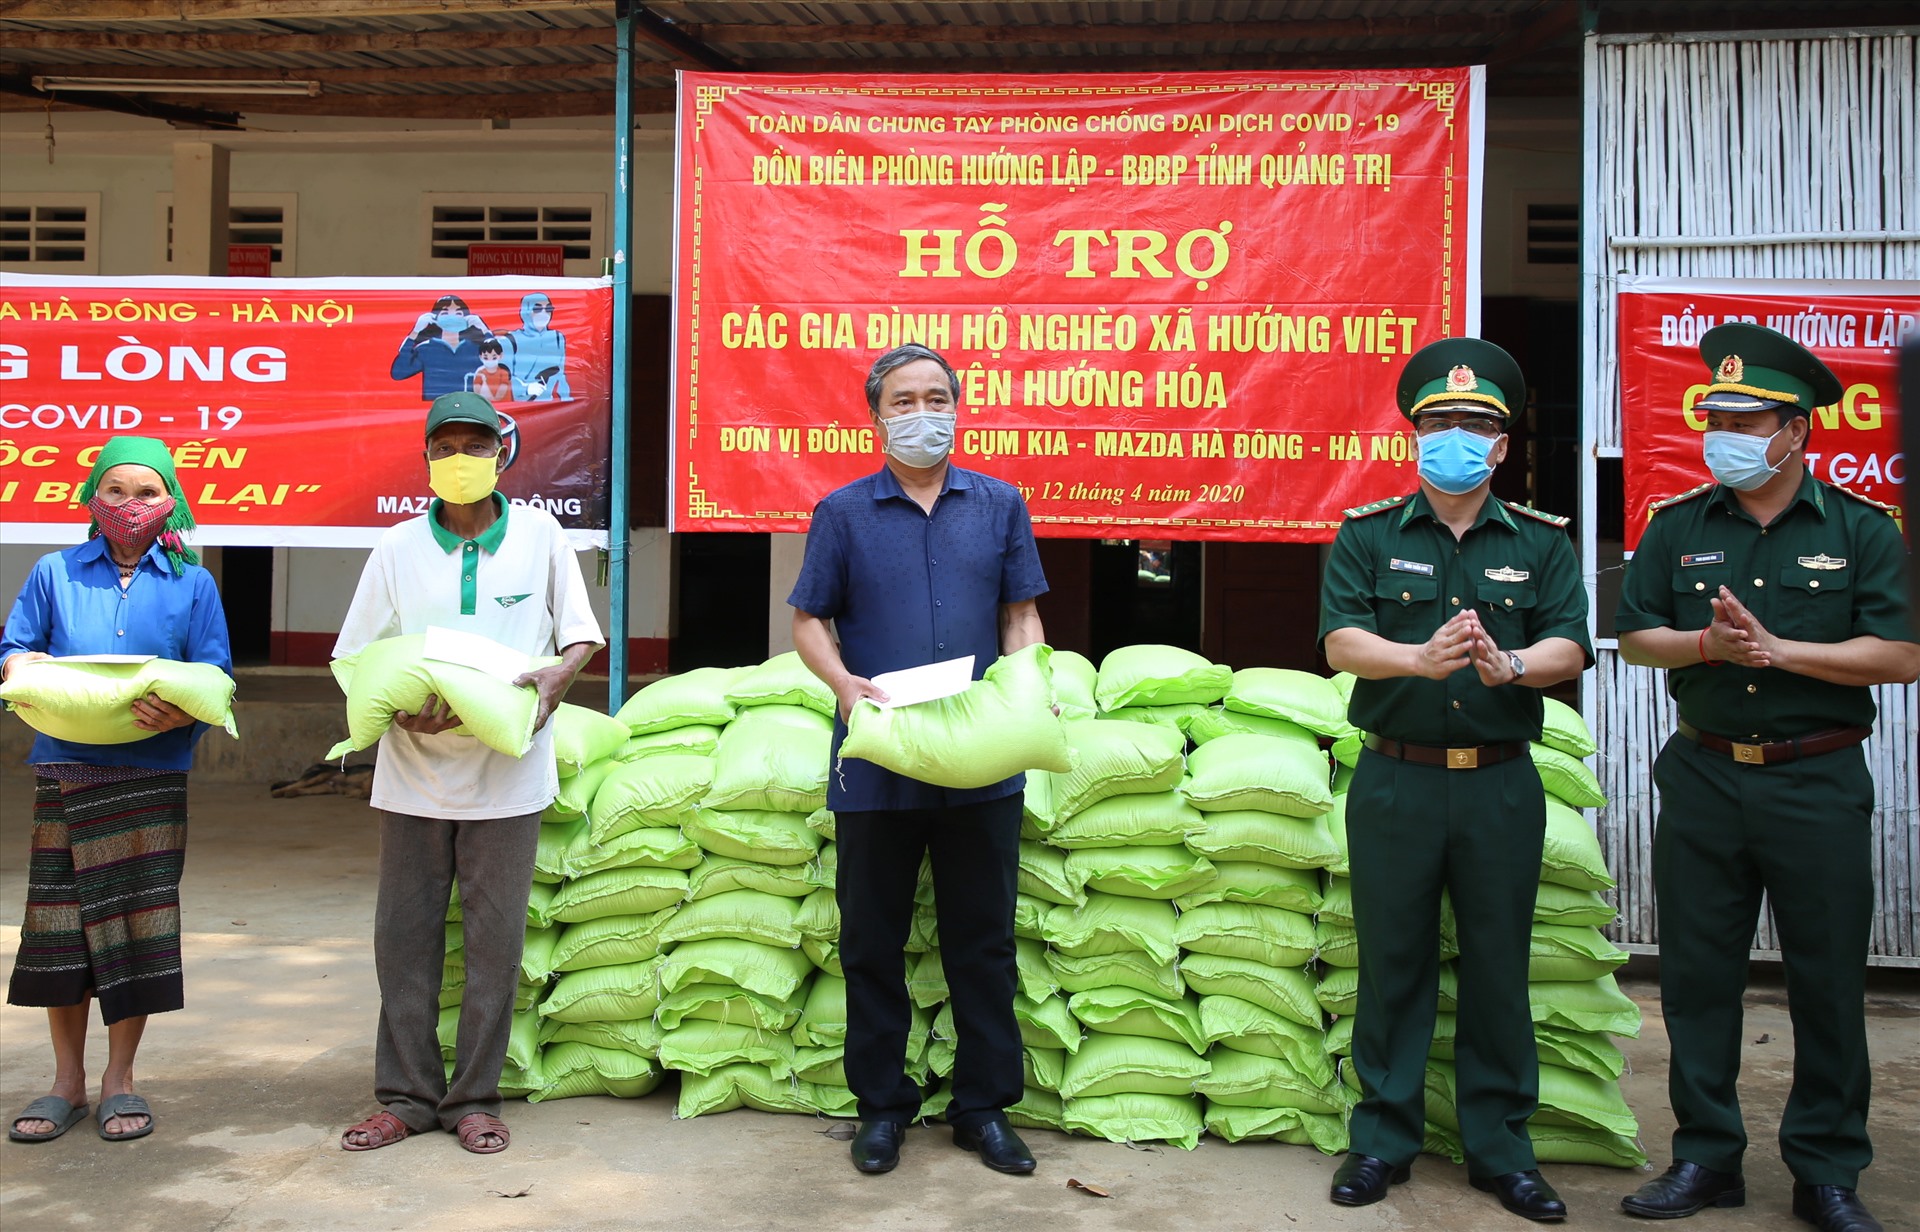 Không chỉ hỗ trợ cho các lực lượng và người dân bạn Lào, Biên phòng Quảng Trị và Biên phòng Hướng Lập còn hỗ trợ 2 tấn gạo cho 2 xã Hướng Việt và Hướng Lập, 500kg cho bản kết nghĩa Tà Păng (xã Hướng Lập).